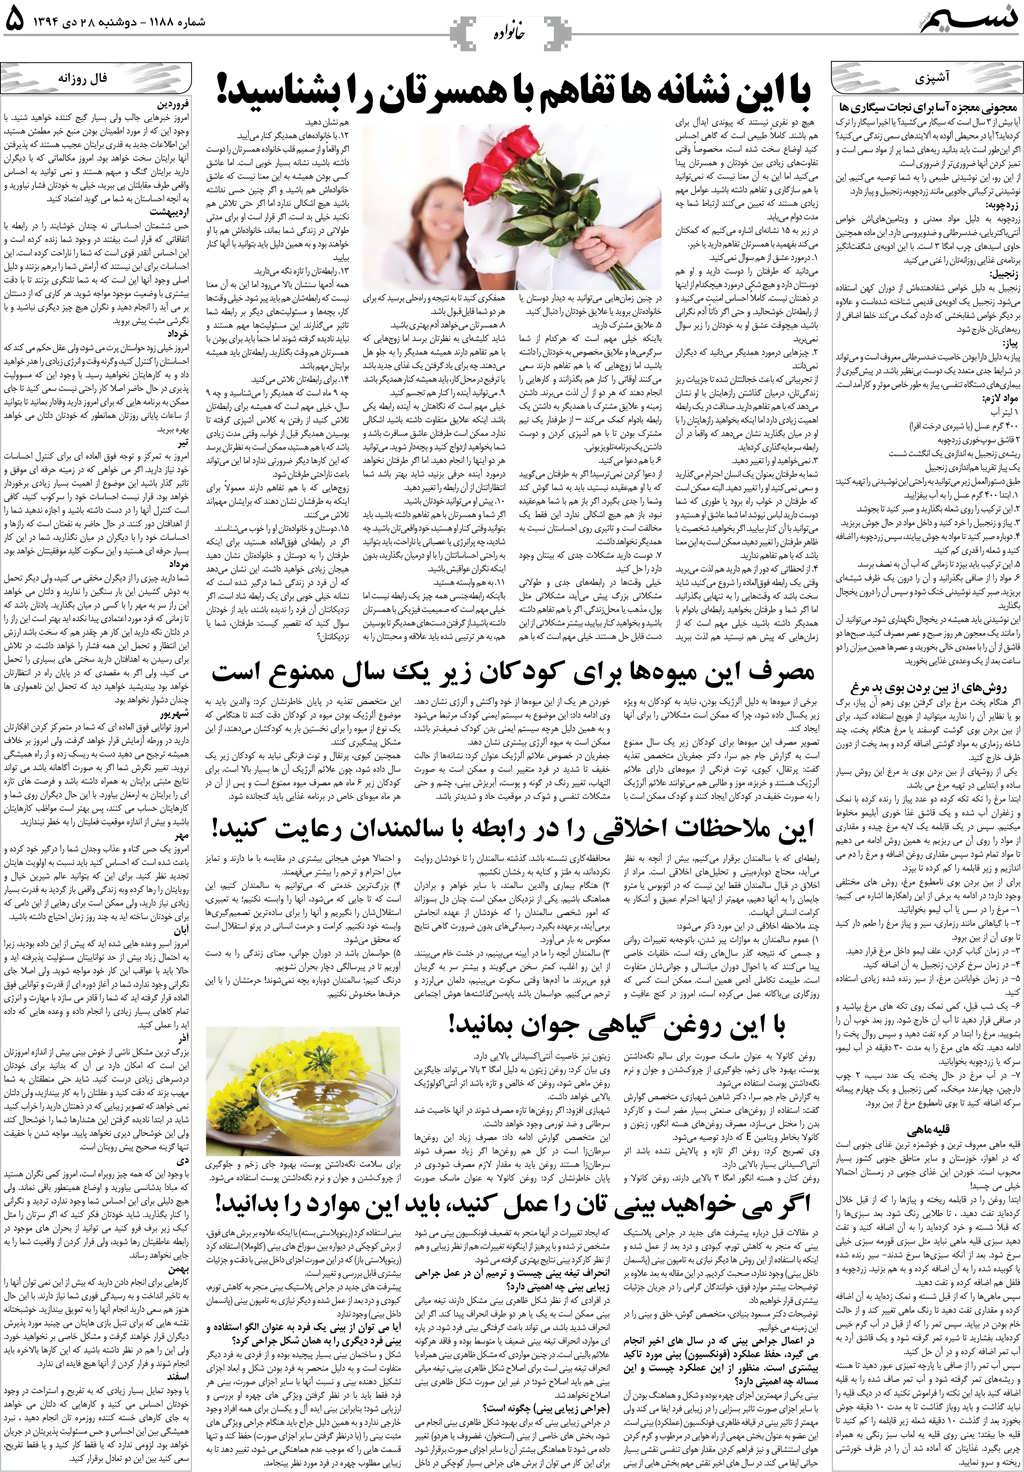 صفحه خانواده روزنامه نسیم شماره 1188